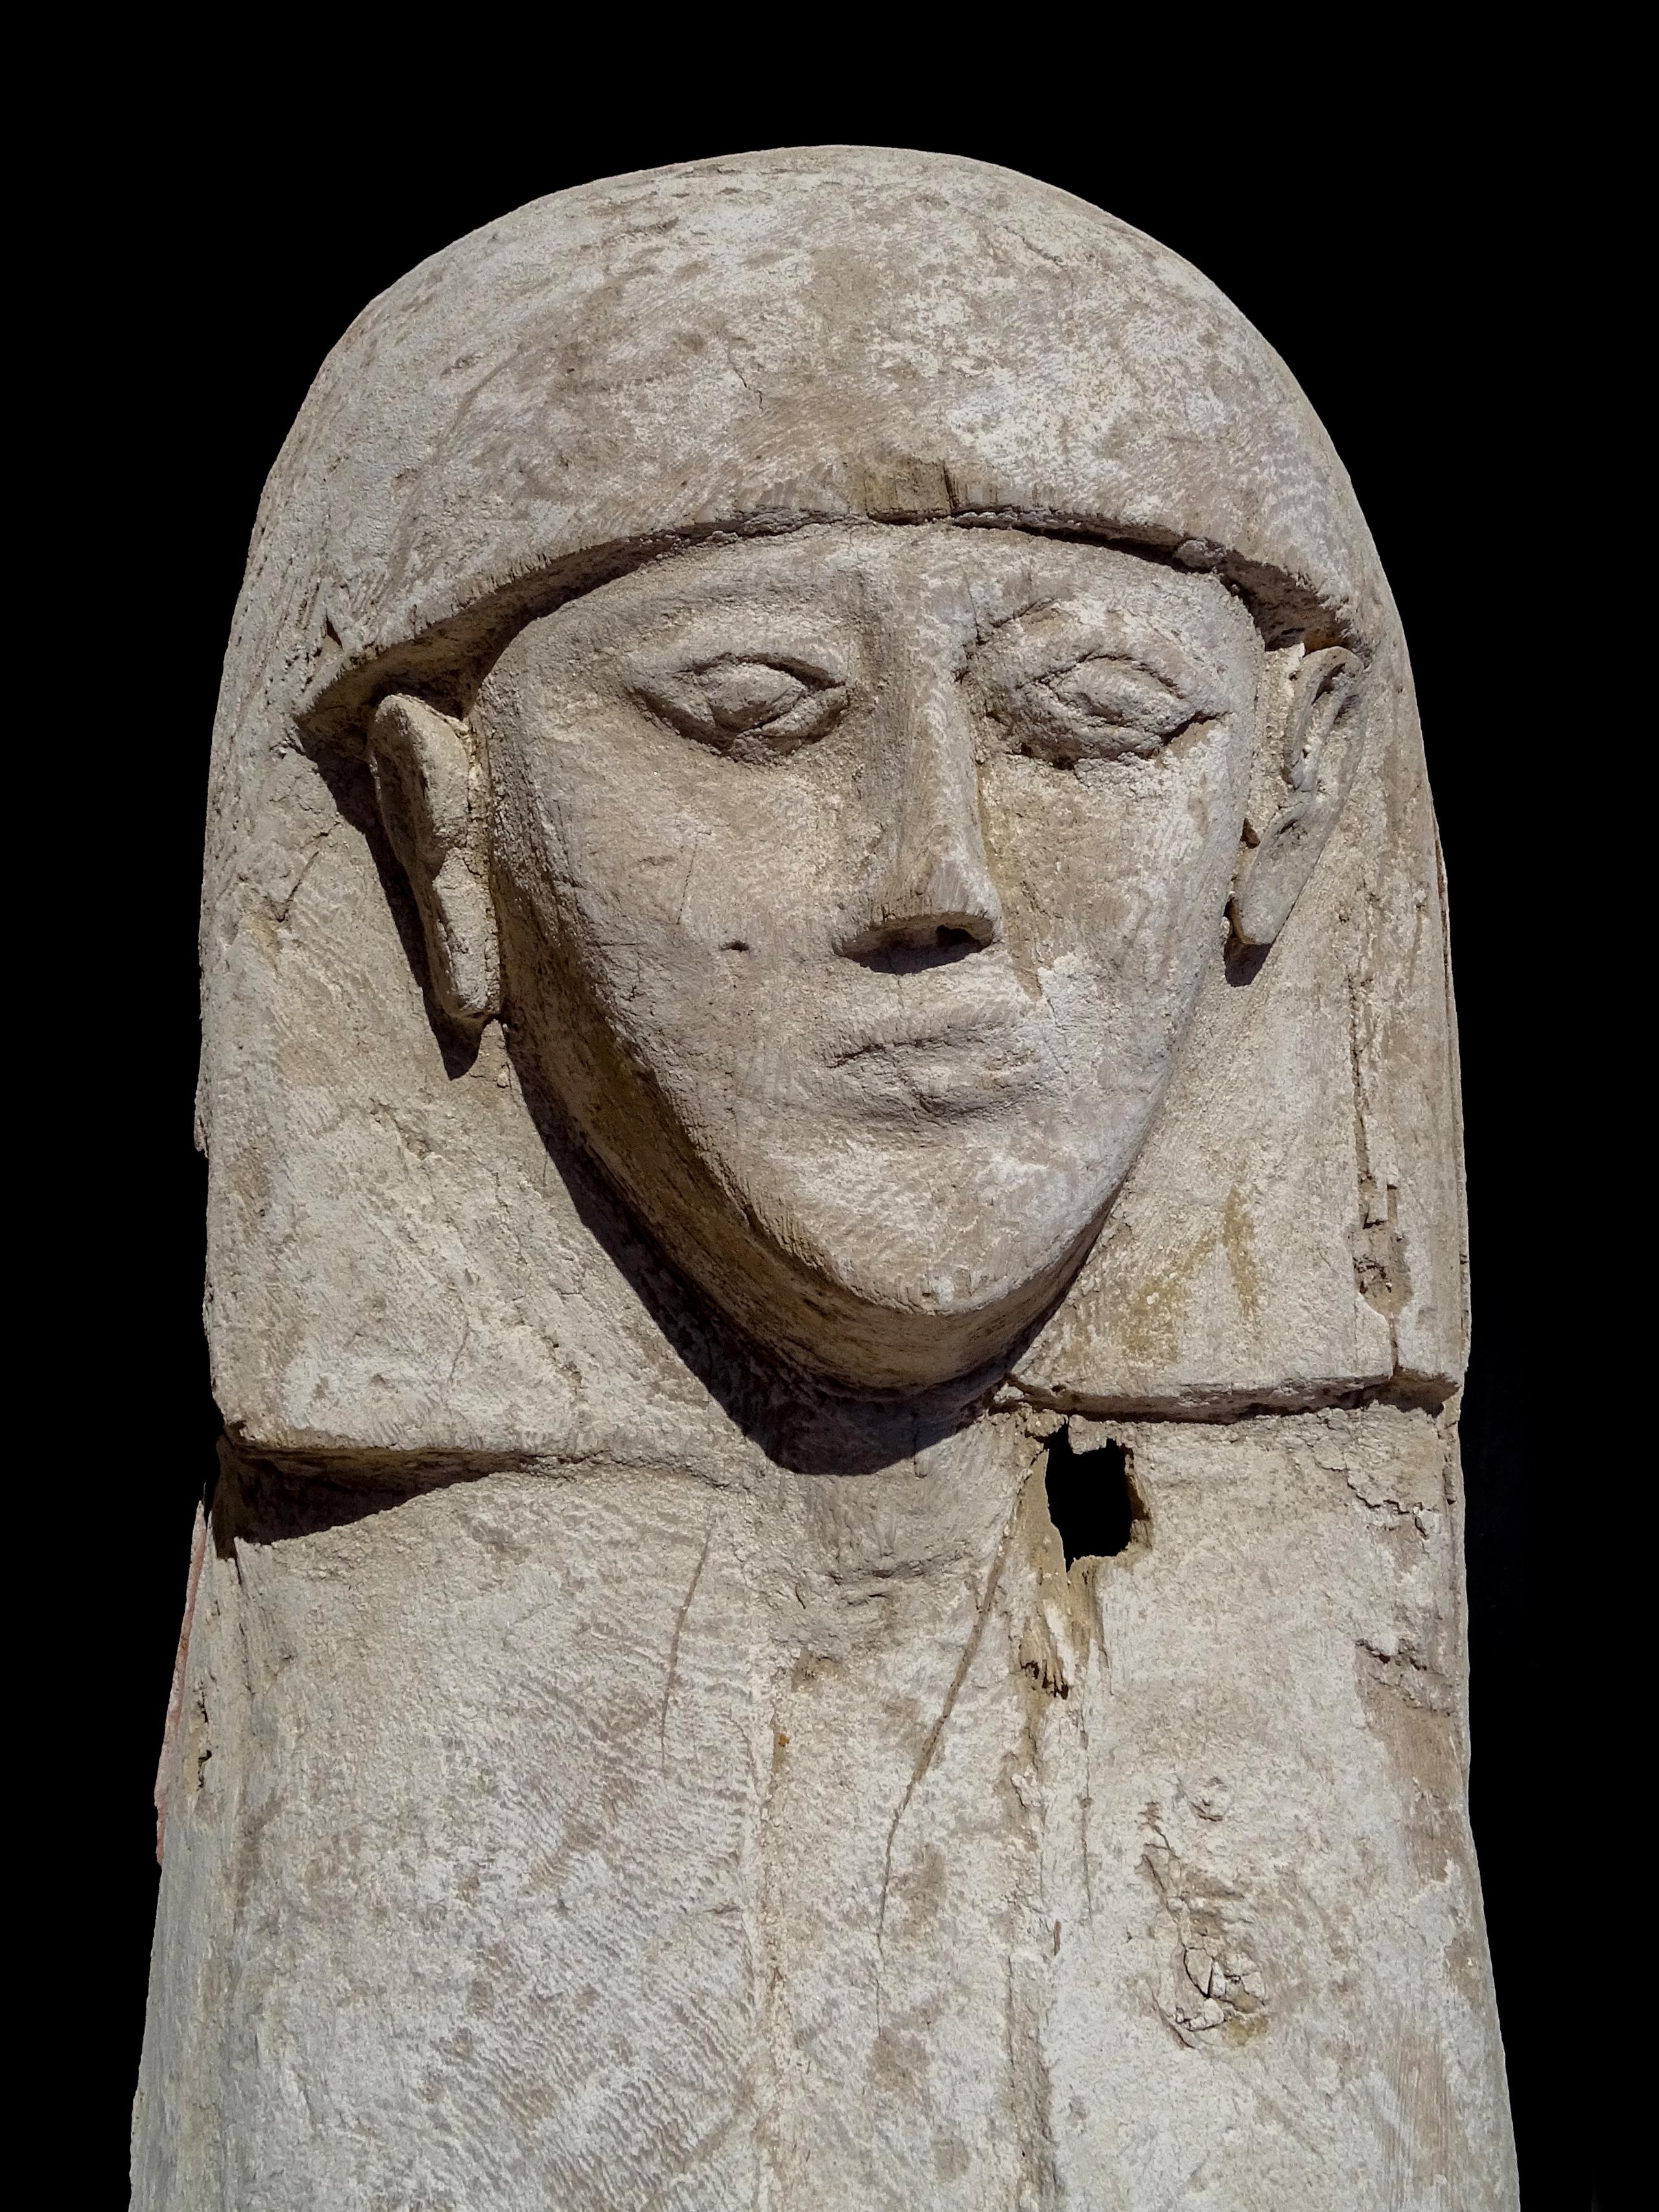 Detalle del ataúd, de una antigüedad de 3,600 años, en cuyo interior reposaba la momia de una joven y su ajuar, encontrado en Luxor por arqueólogos españoles del Proyecto Djehuty.